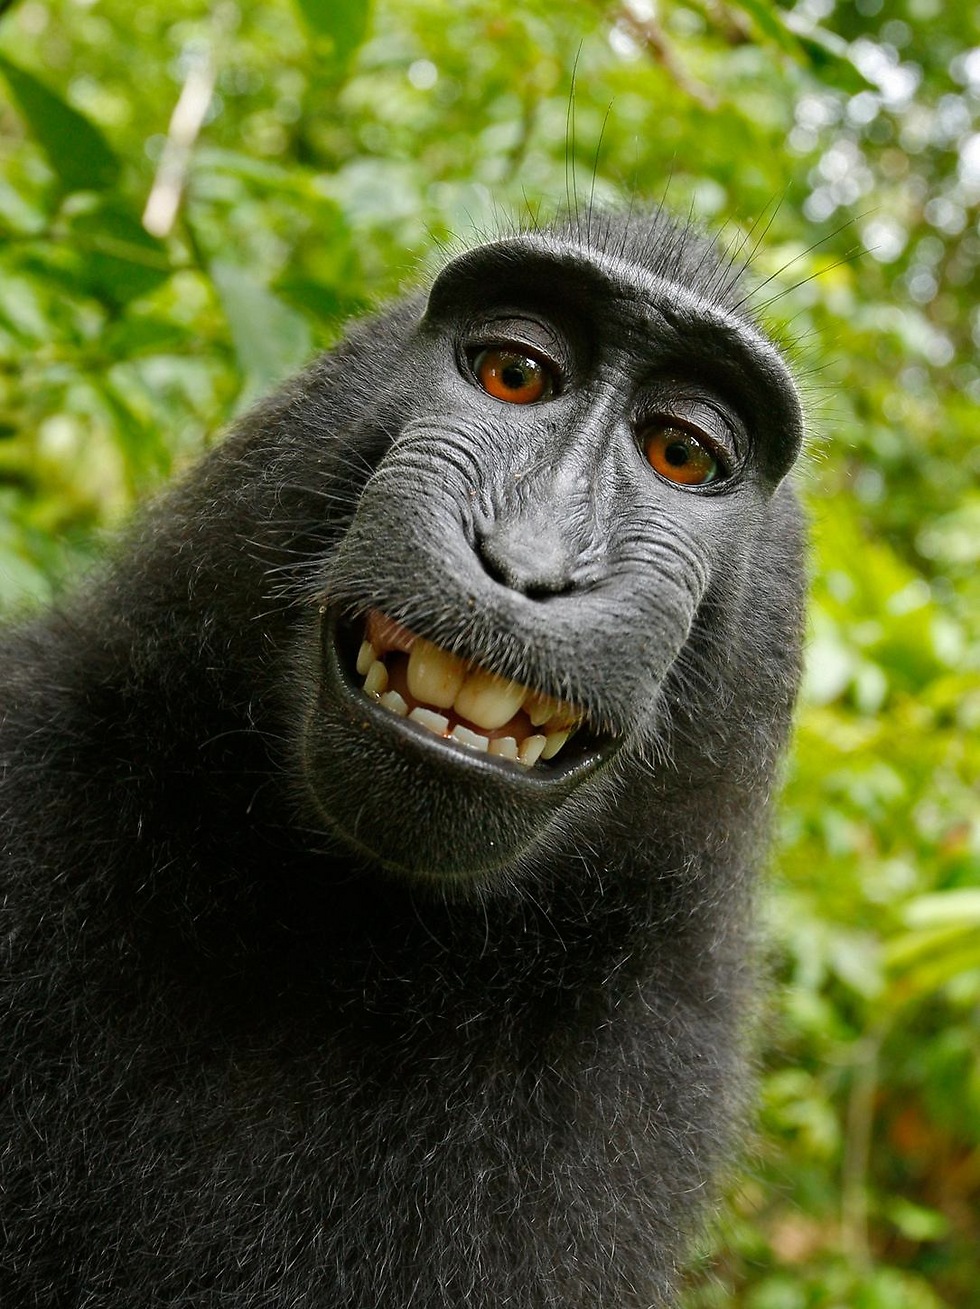 גם היא צריכה אישור חברתי. סלפי שצולם בידי קופת מקוק שחור בגן חיות באינדונזיה, שלקחה את המצלמה מידיו של הצלם וצילמה את עצמה ()